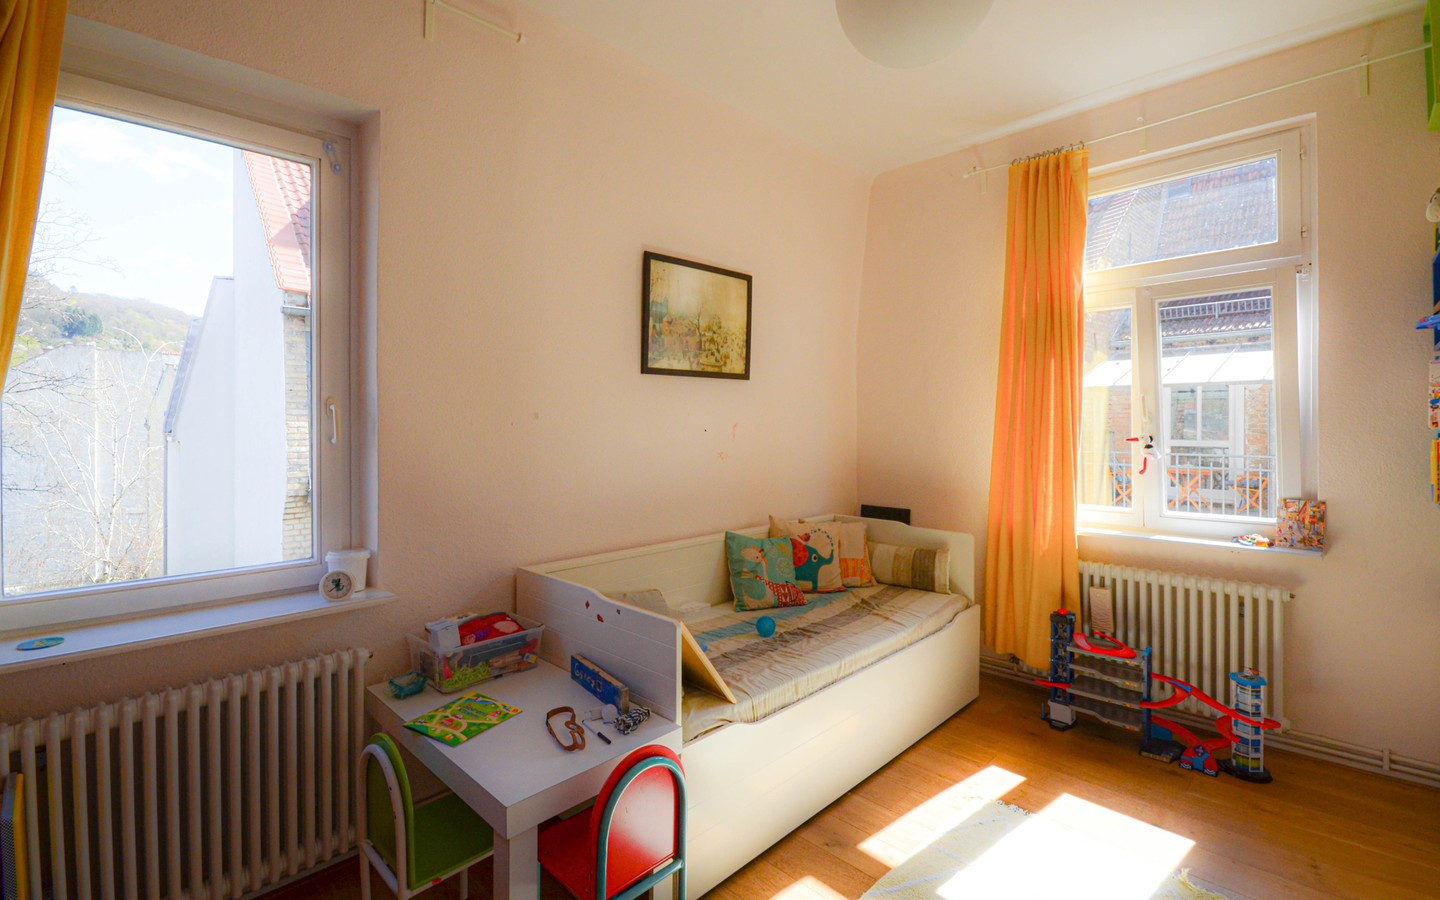 Kinderzimmer - Traumhaft schöne Fünfzimmerwohnung in Heidelberg-Neuenheim